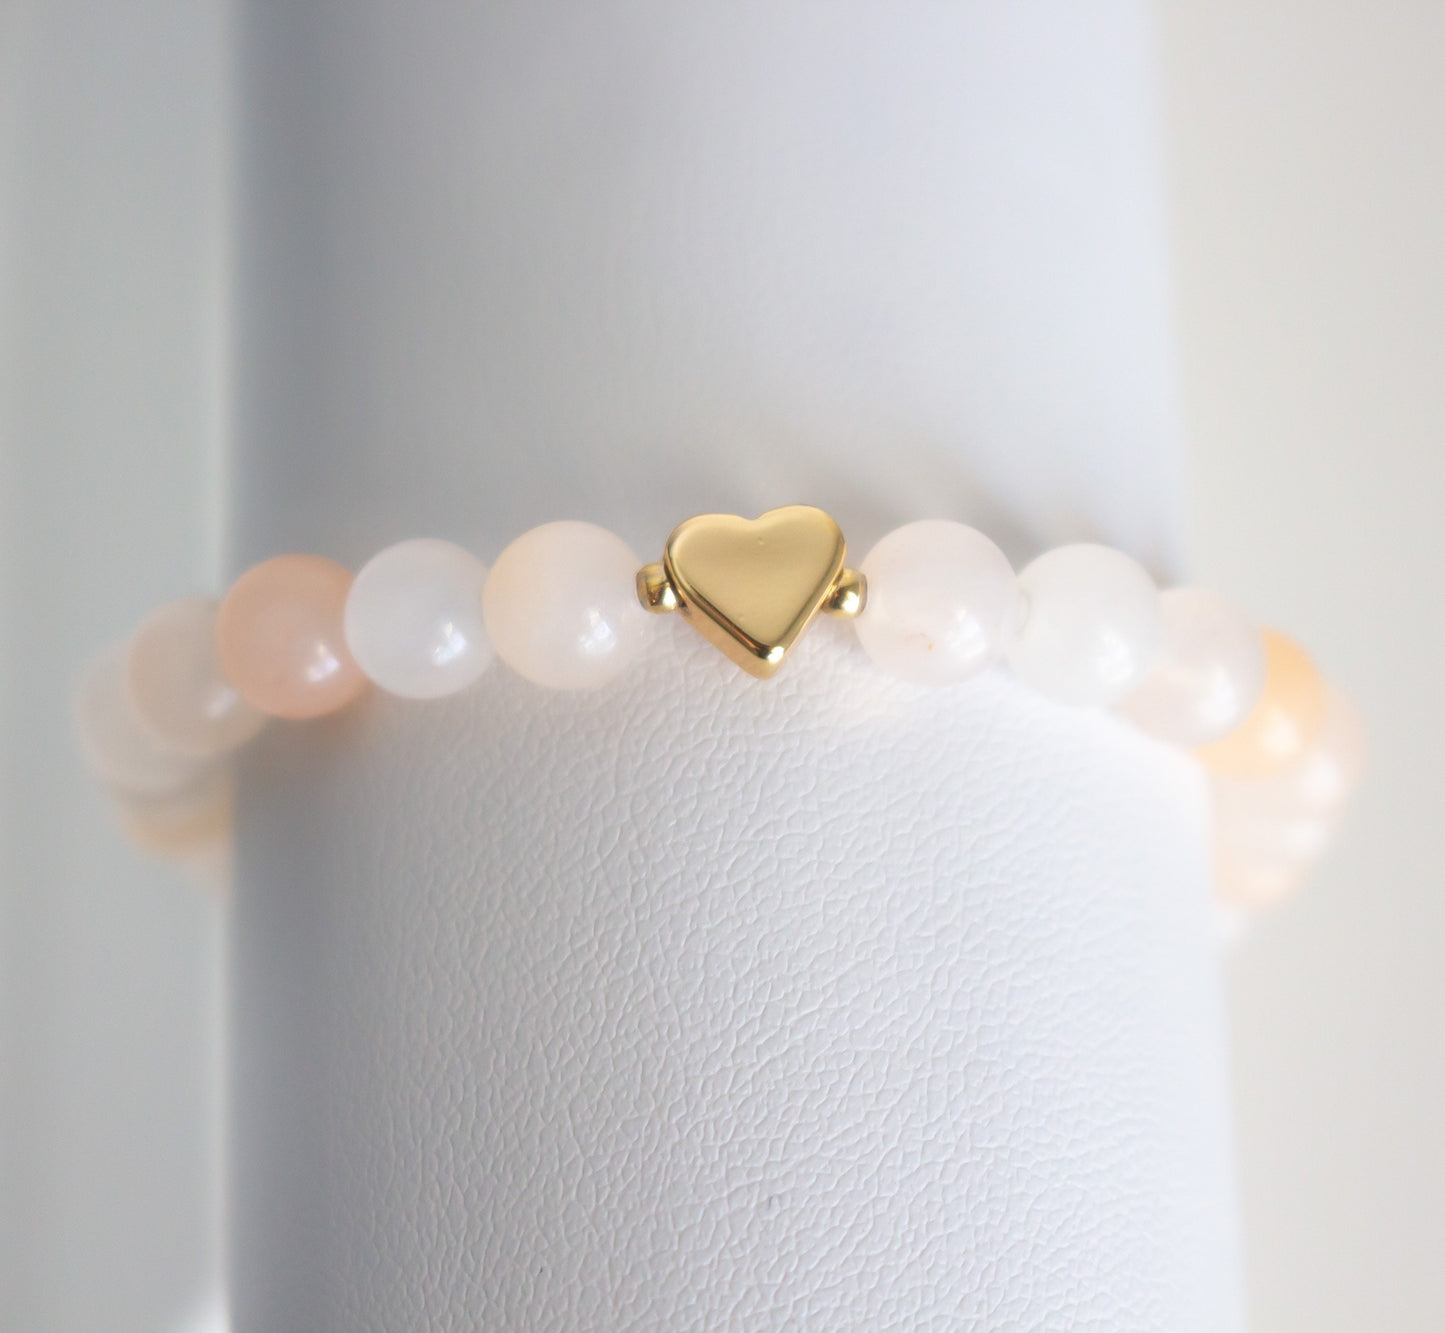 Natural Peach Aventurine Gemstone Bracelet - Meg’s Gems